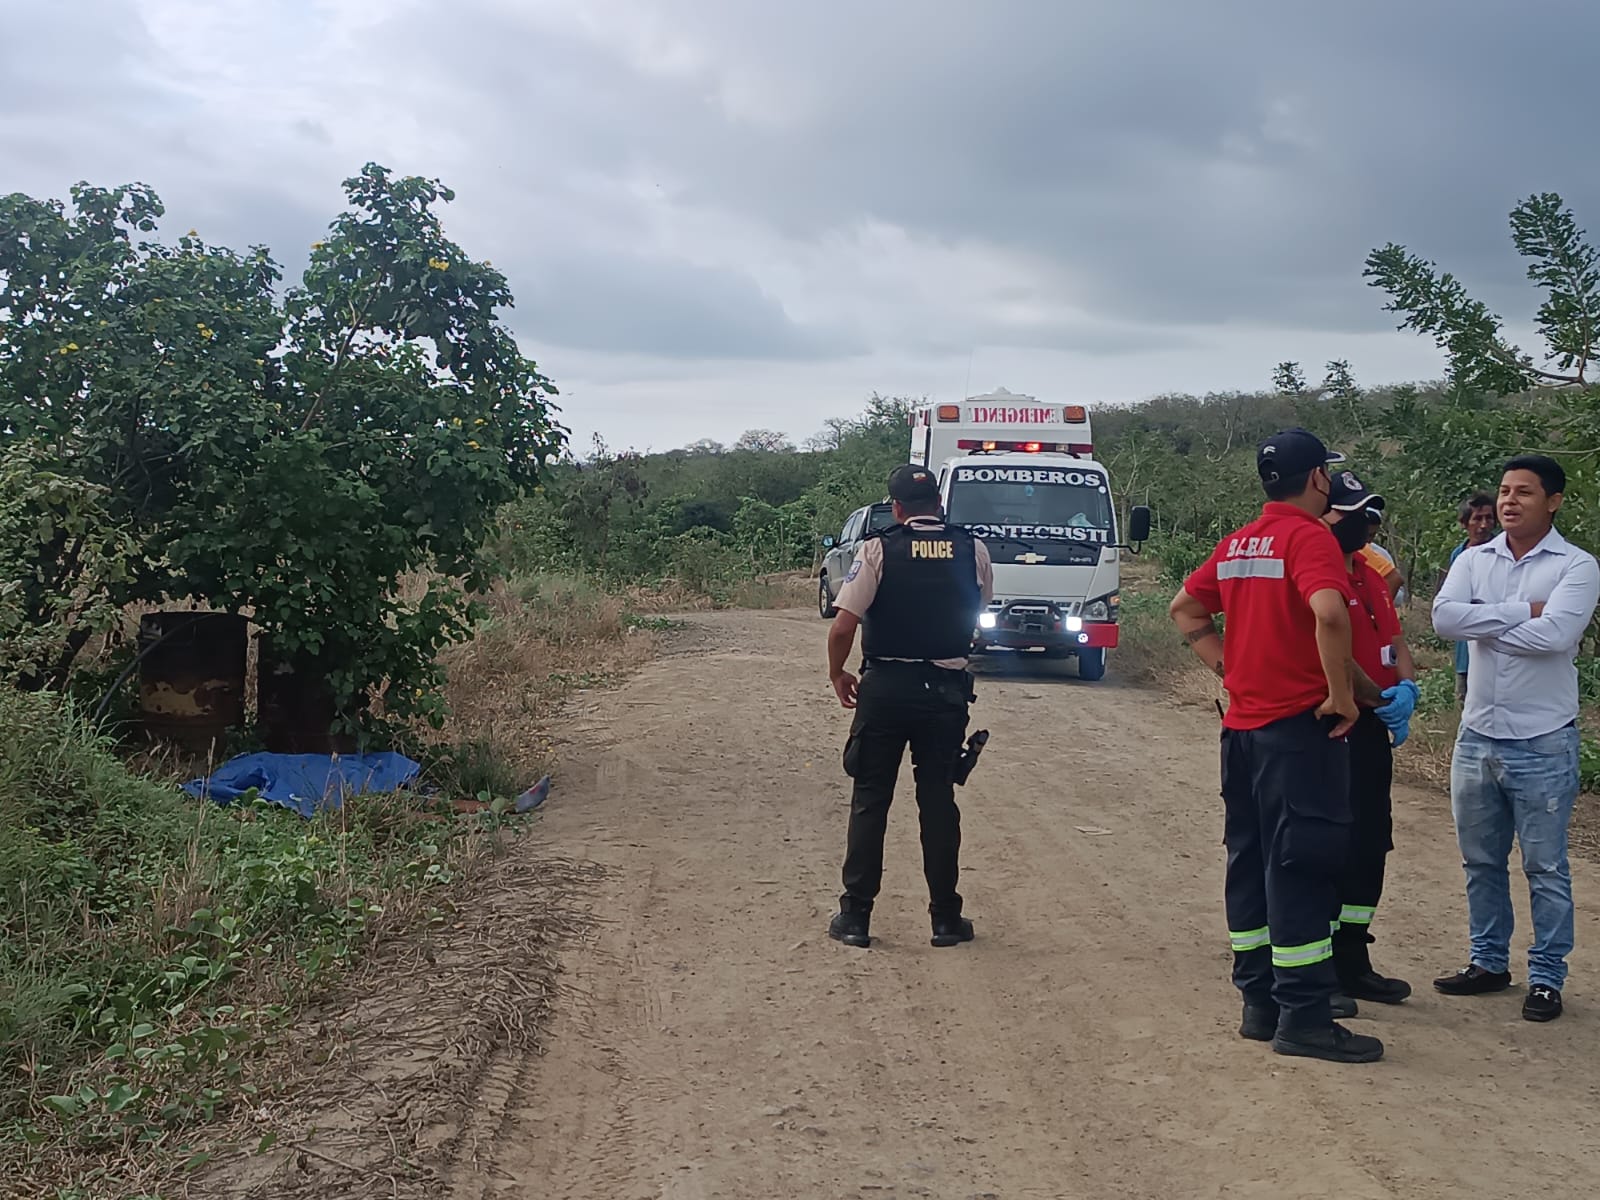 Los cuerpos de tres personas son hallados en diferentes vías de Manabí